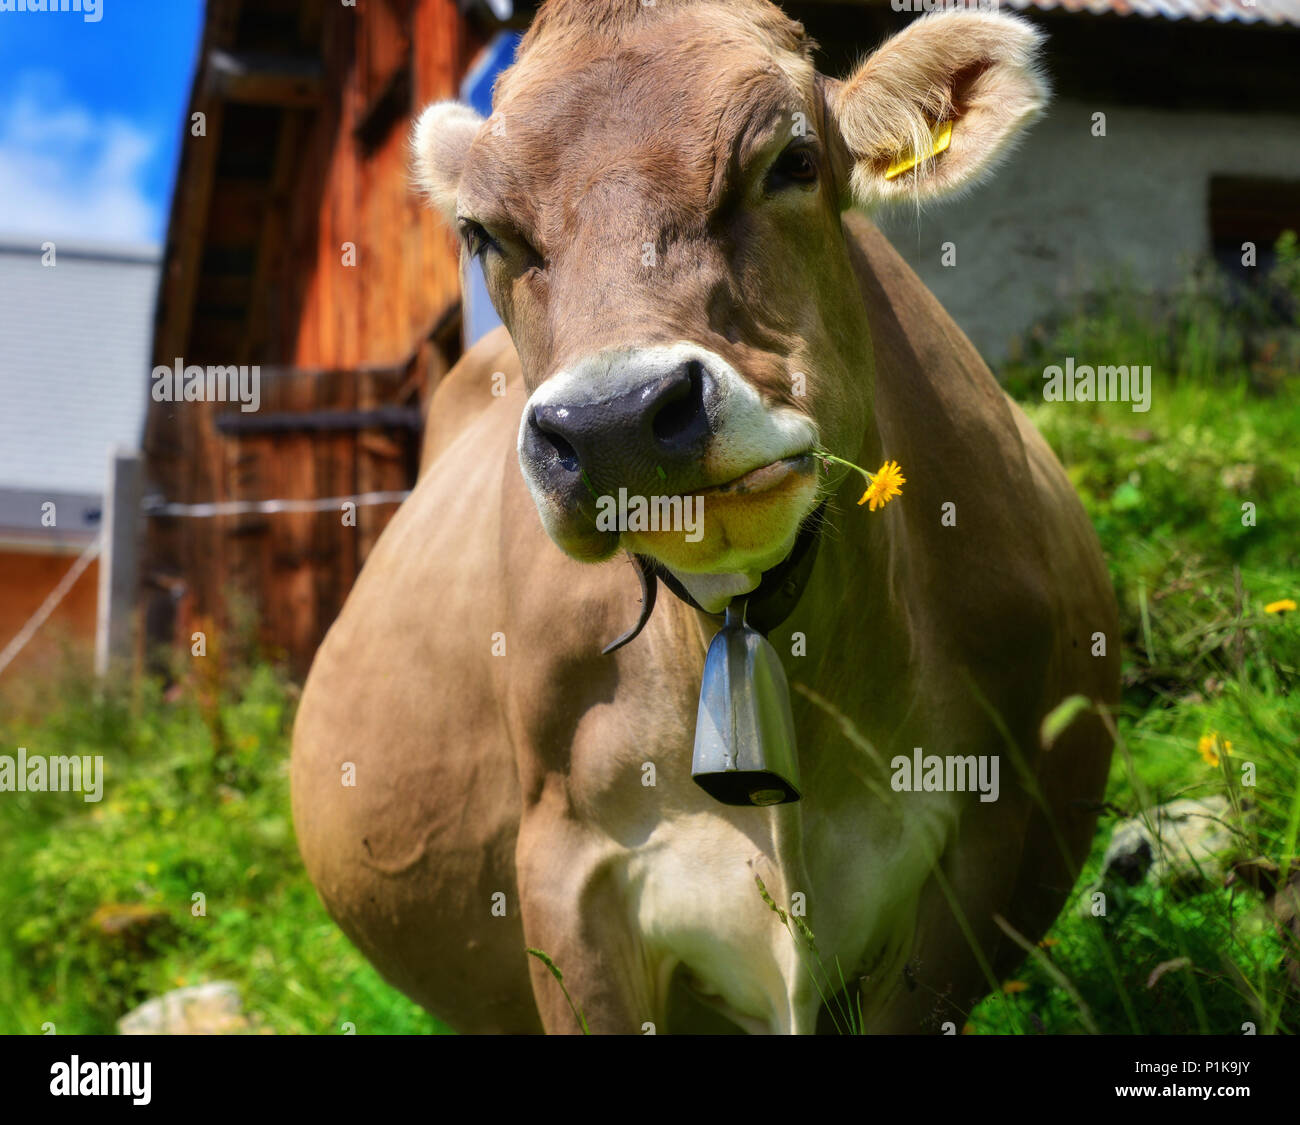 Kuh mit einem Löwenzahn Blume im Maul, Schweiz Stockfotografie - Alamy